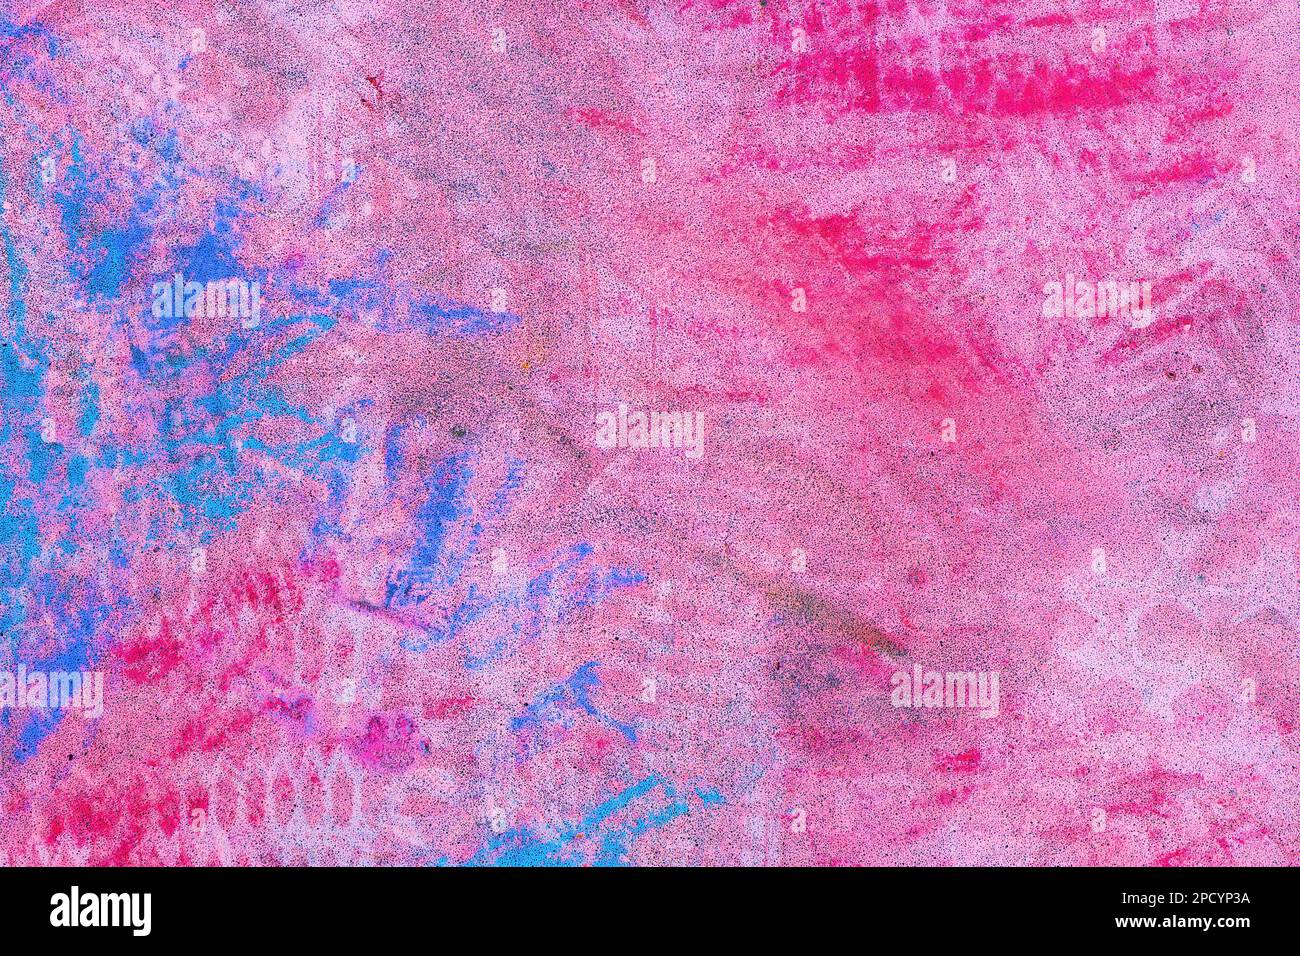 Texture grunge, craie colorée rose et bleue sur une surface en béton Banque D'Images